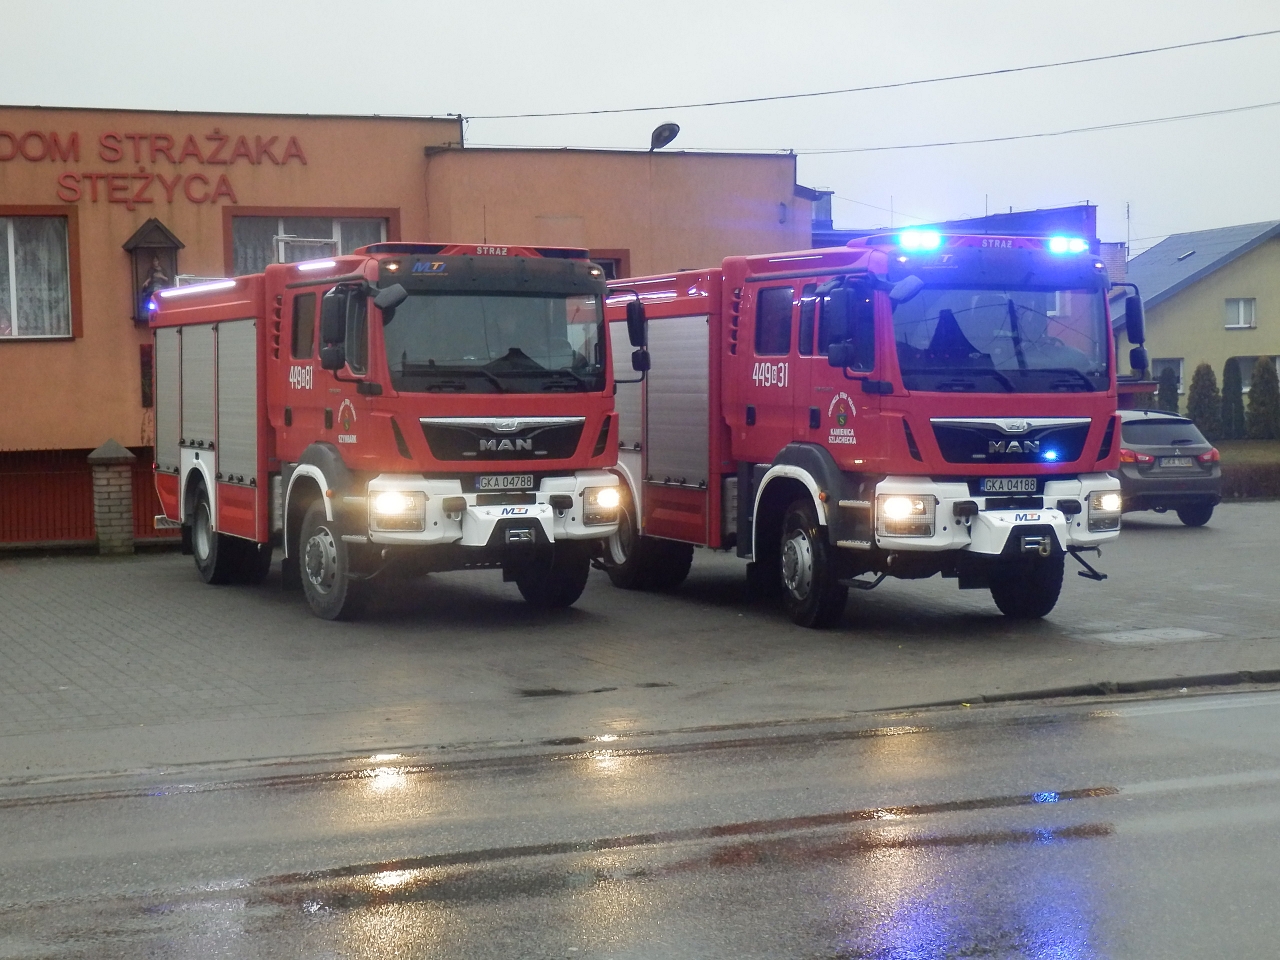 Gmina Stężyca zakupiła trzy nowe wozy strażackie